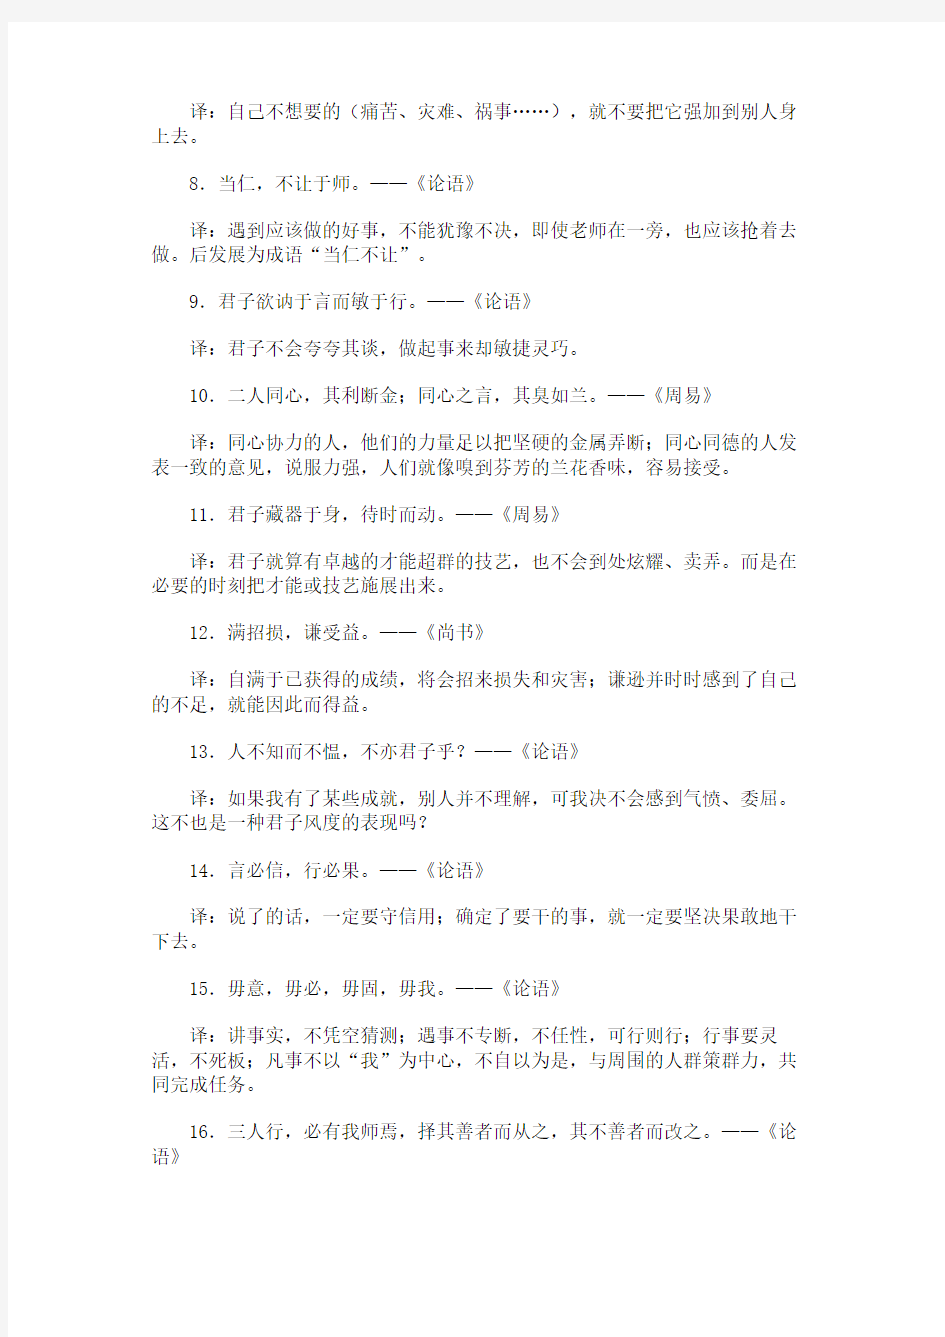 中国古代经典名人名言100句(一年级)